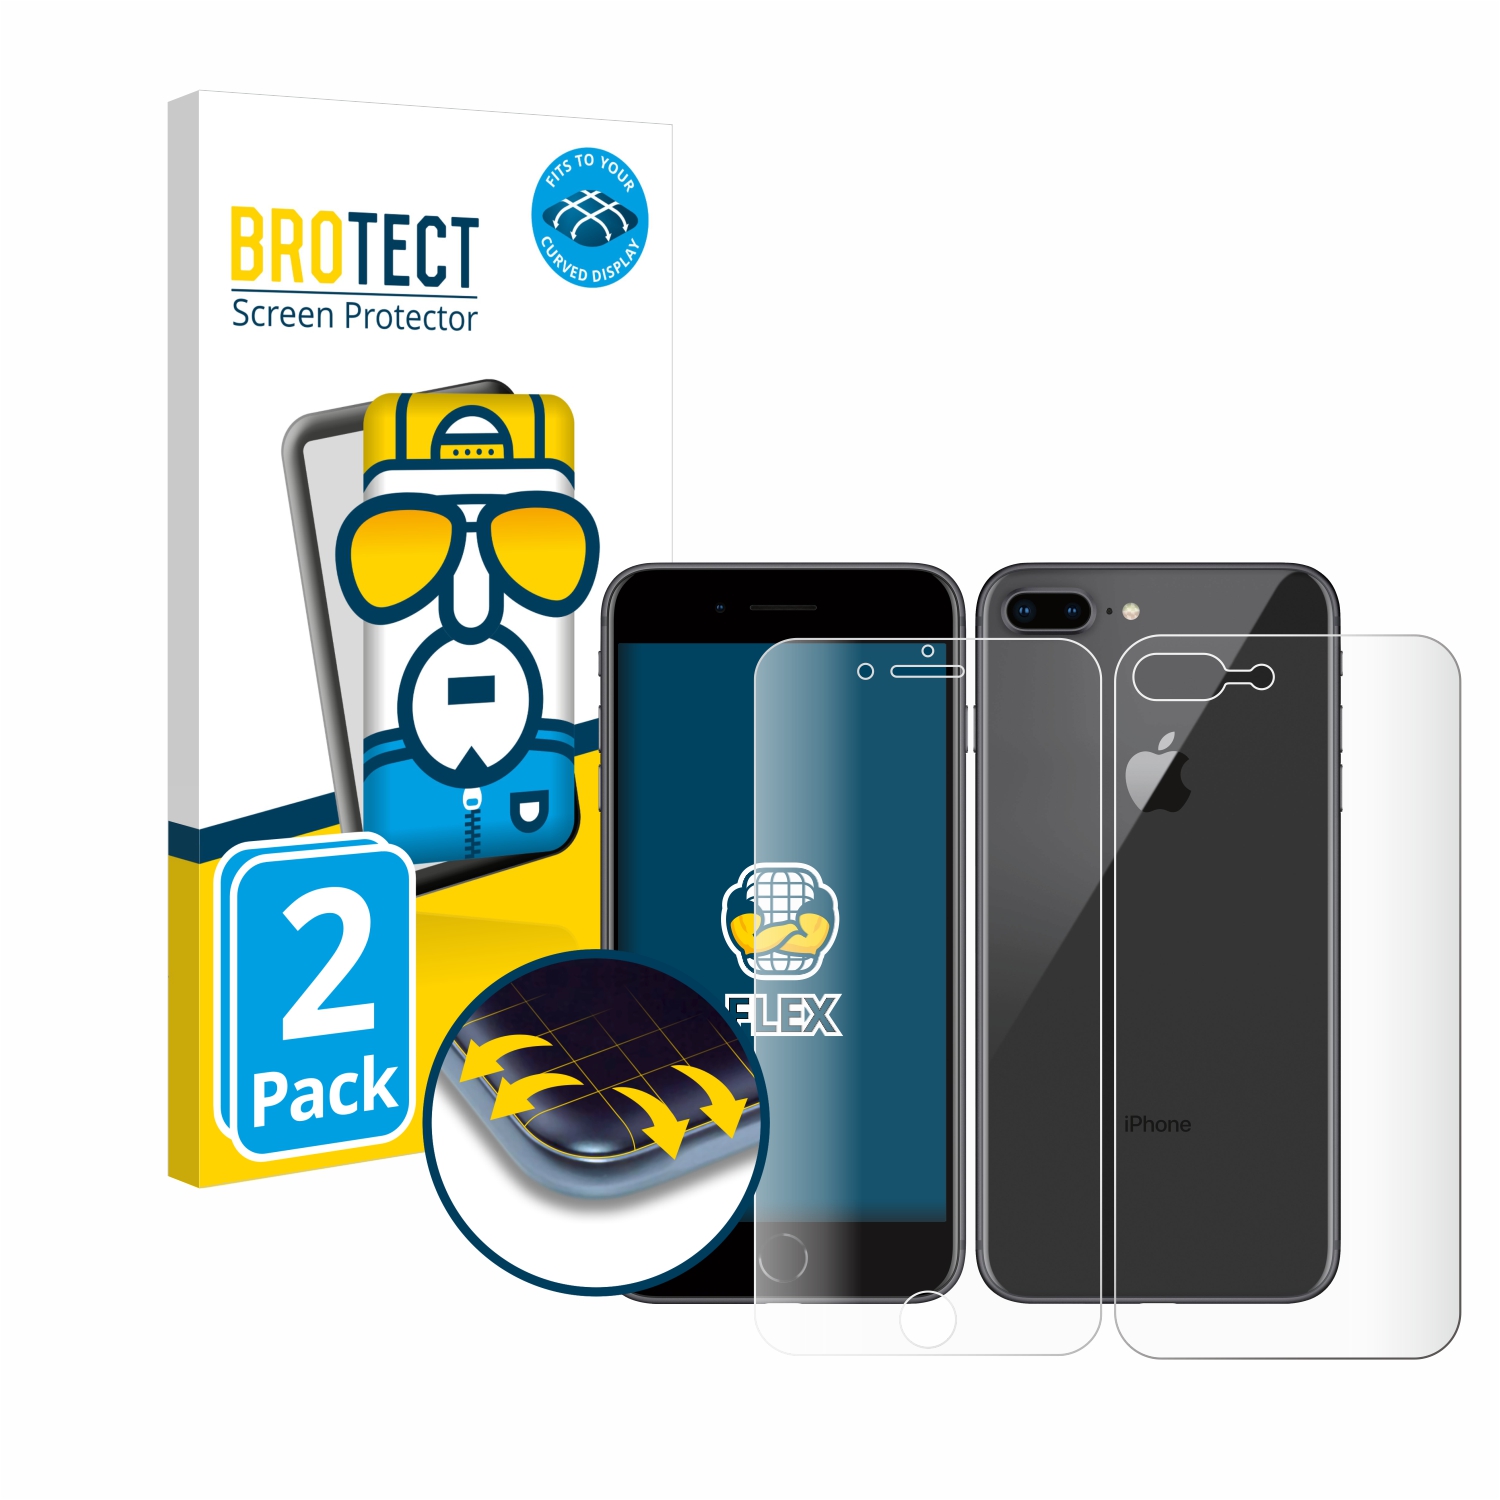 2x BROTECT Flex Full-Cover čirá ochranná fólie pro Apple iPhone 8 Plus (přední + zadní strana)